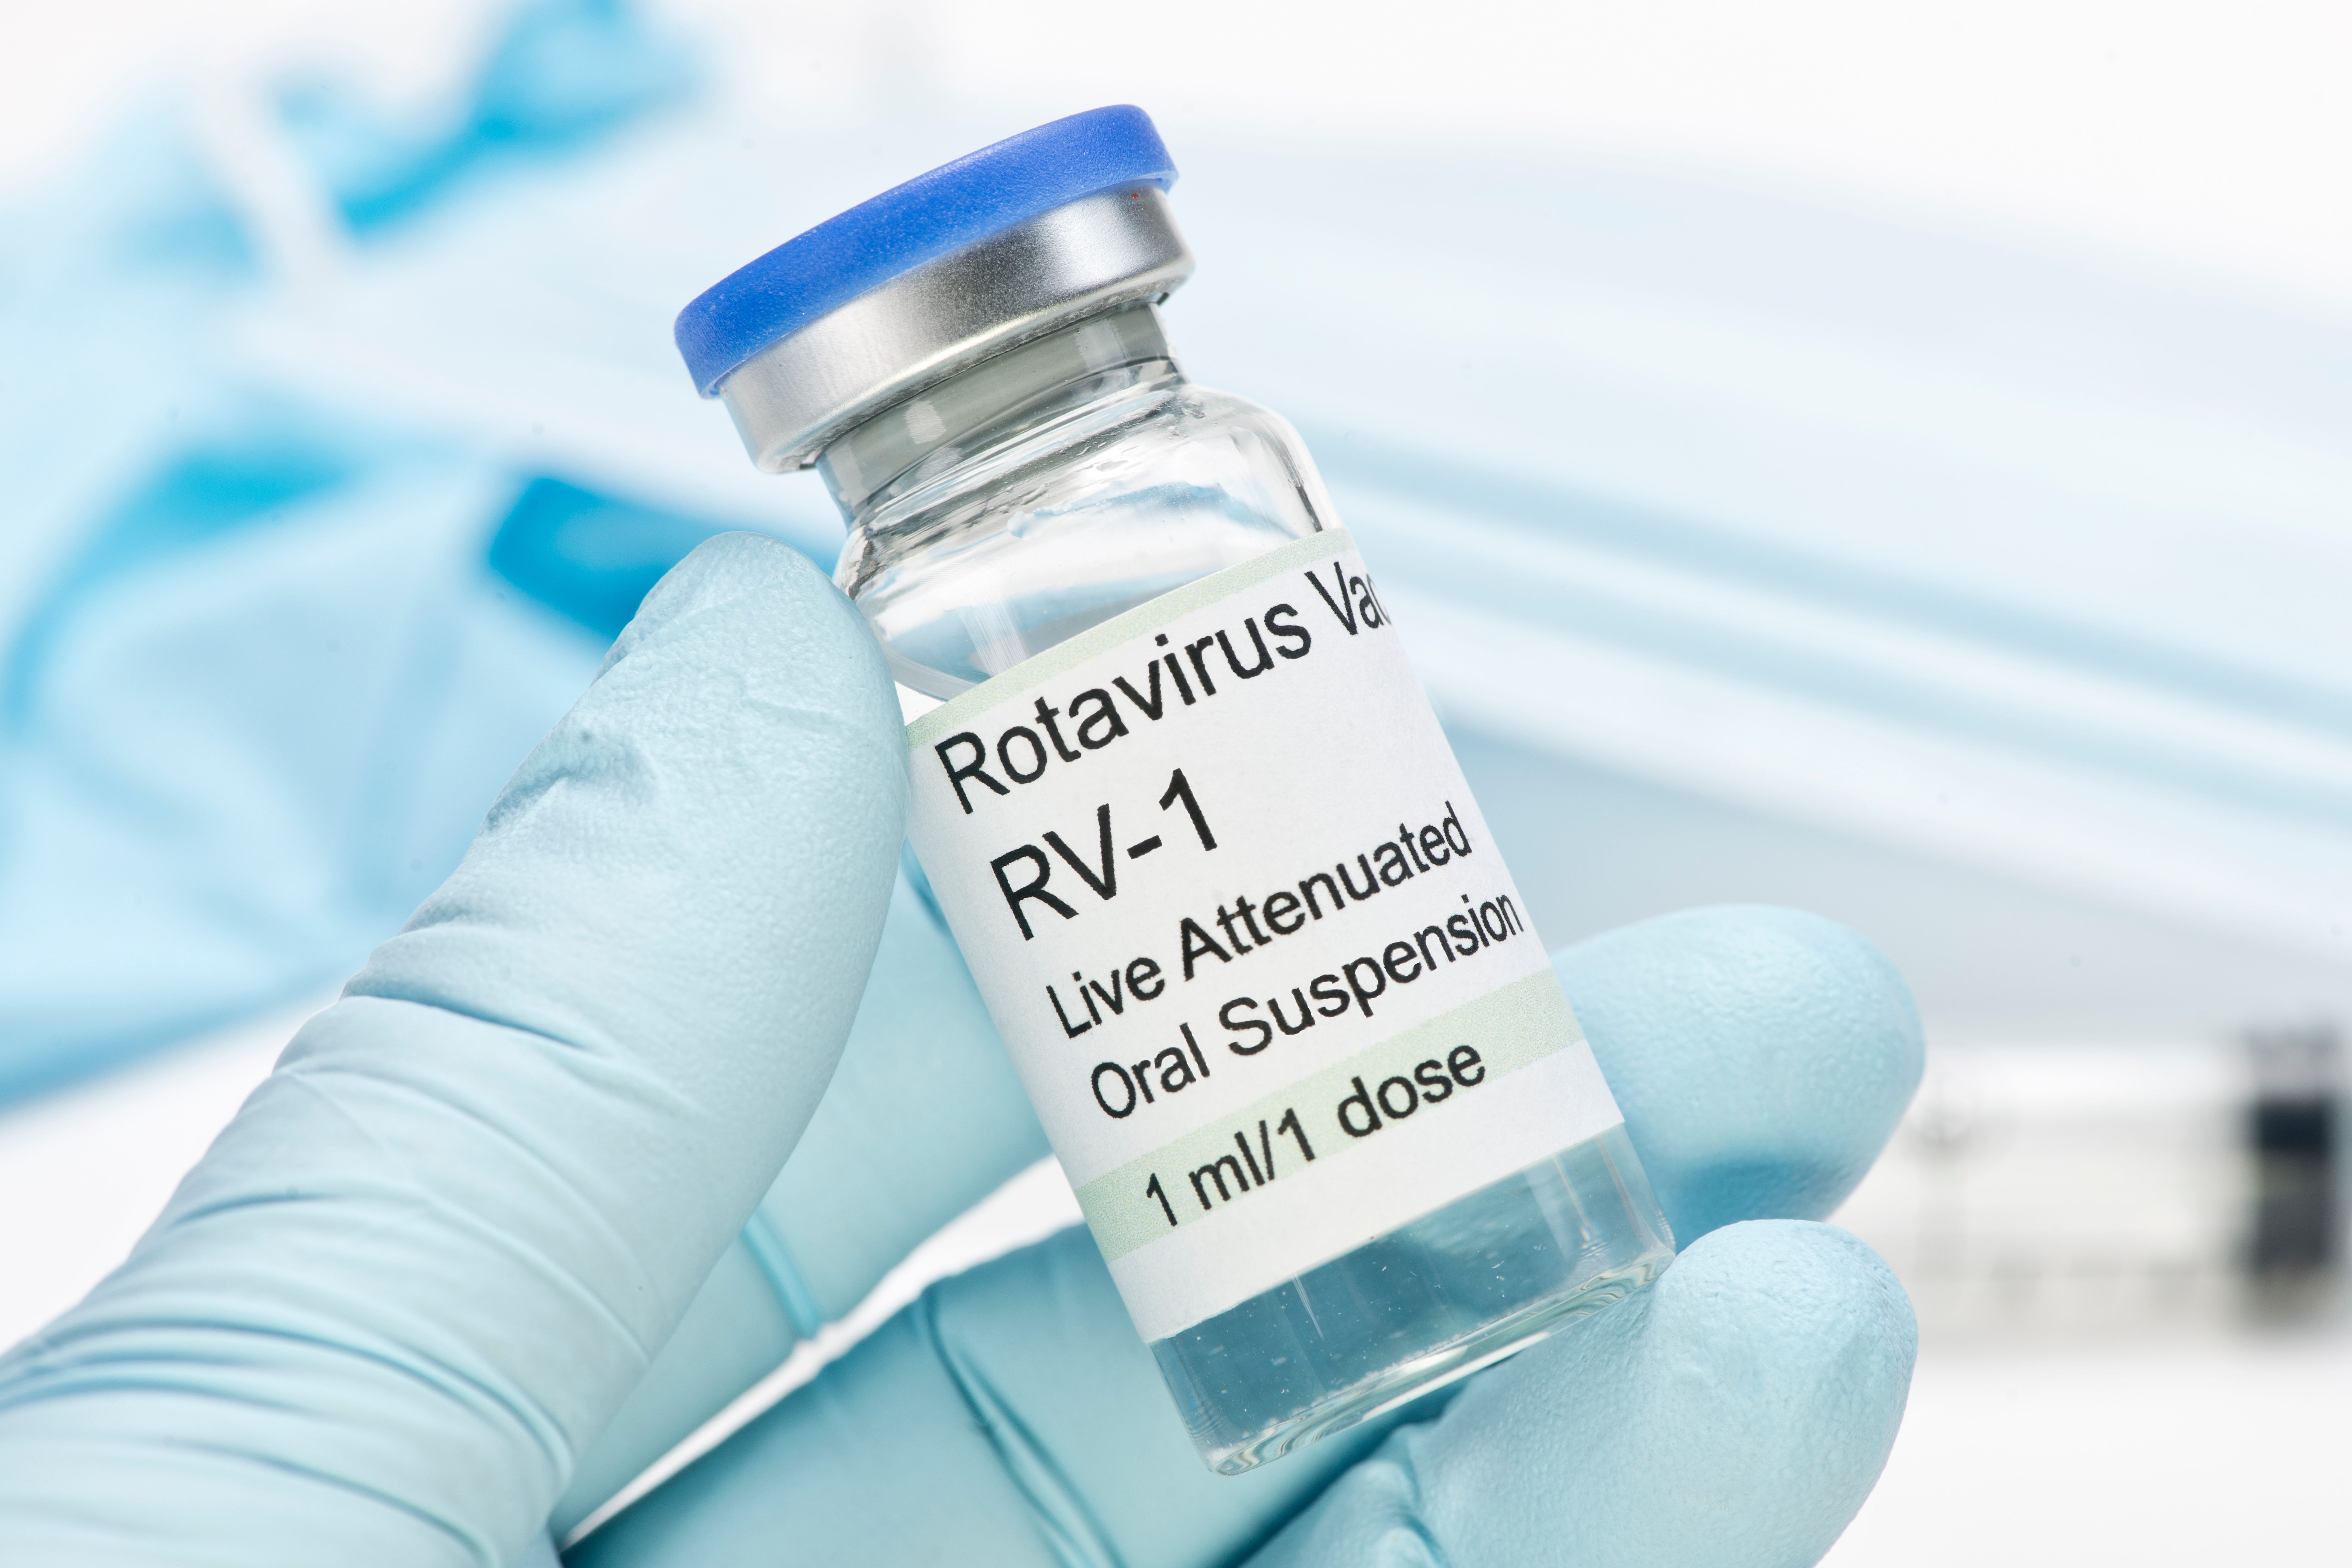 Evaluación de la aceptación de la vacuna contra el rotavirus entre los niños italianos